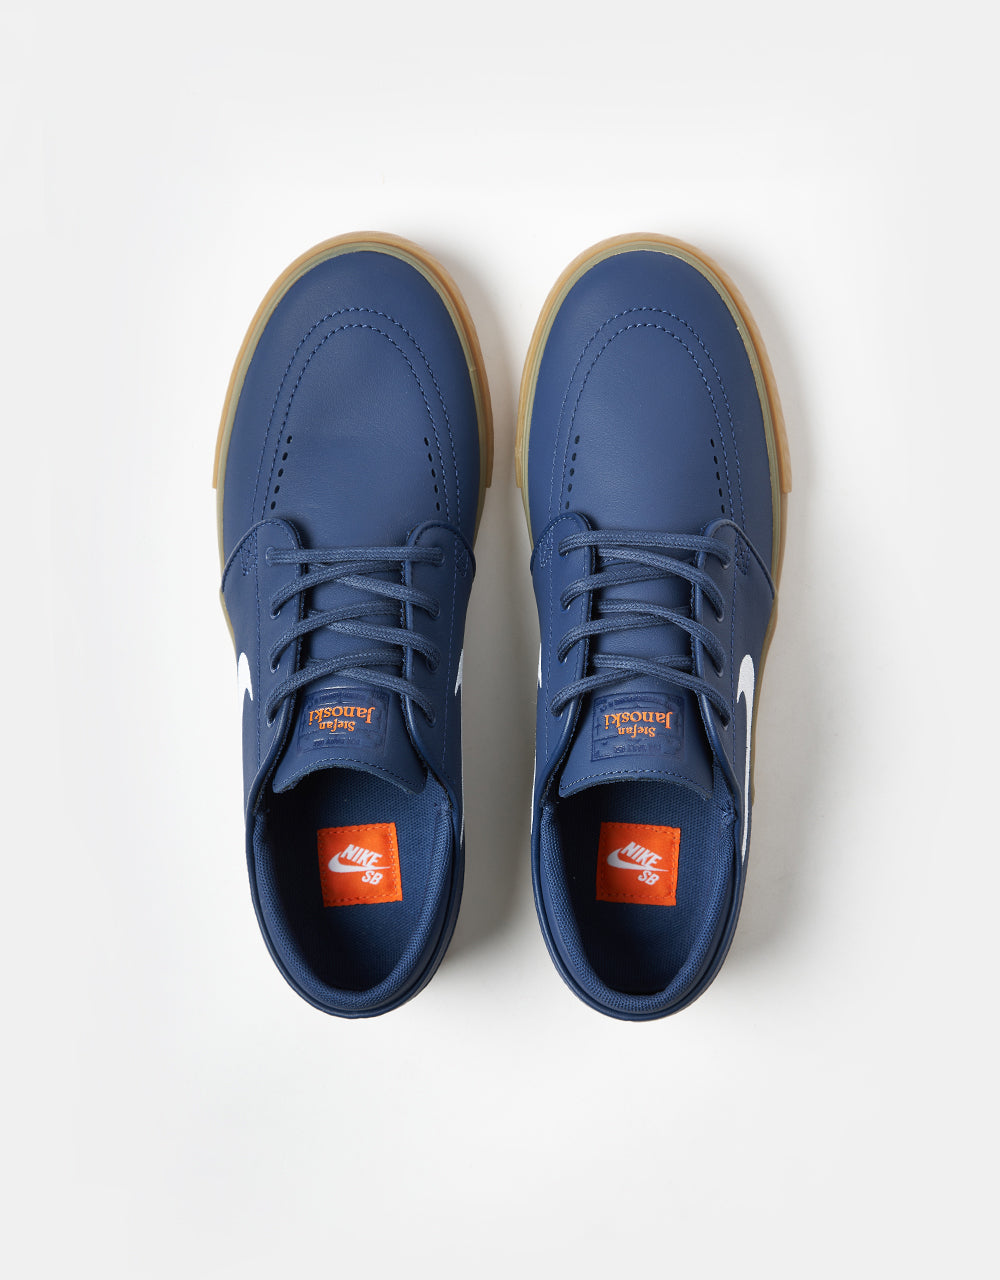 Nike SB Zoom Janoski ISO Skate Shoes - Navy/White-Navy-Gum Lt Brown-Midnight Navy-Safety Orange